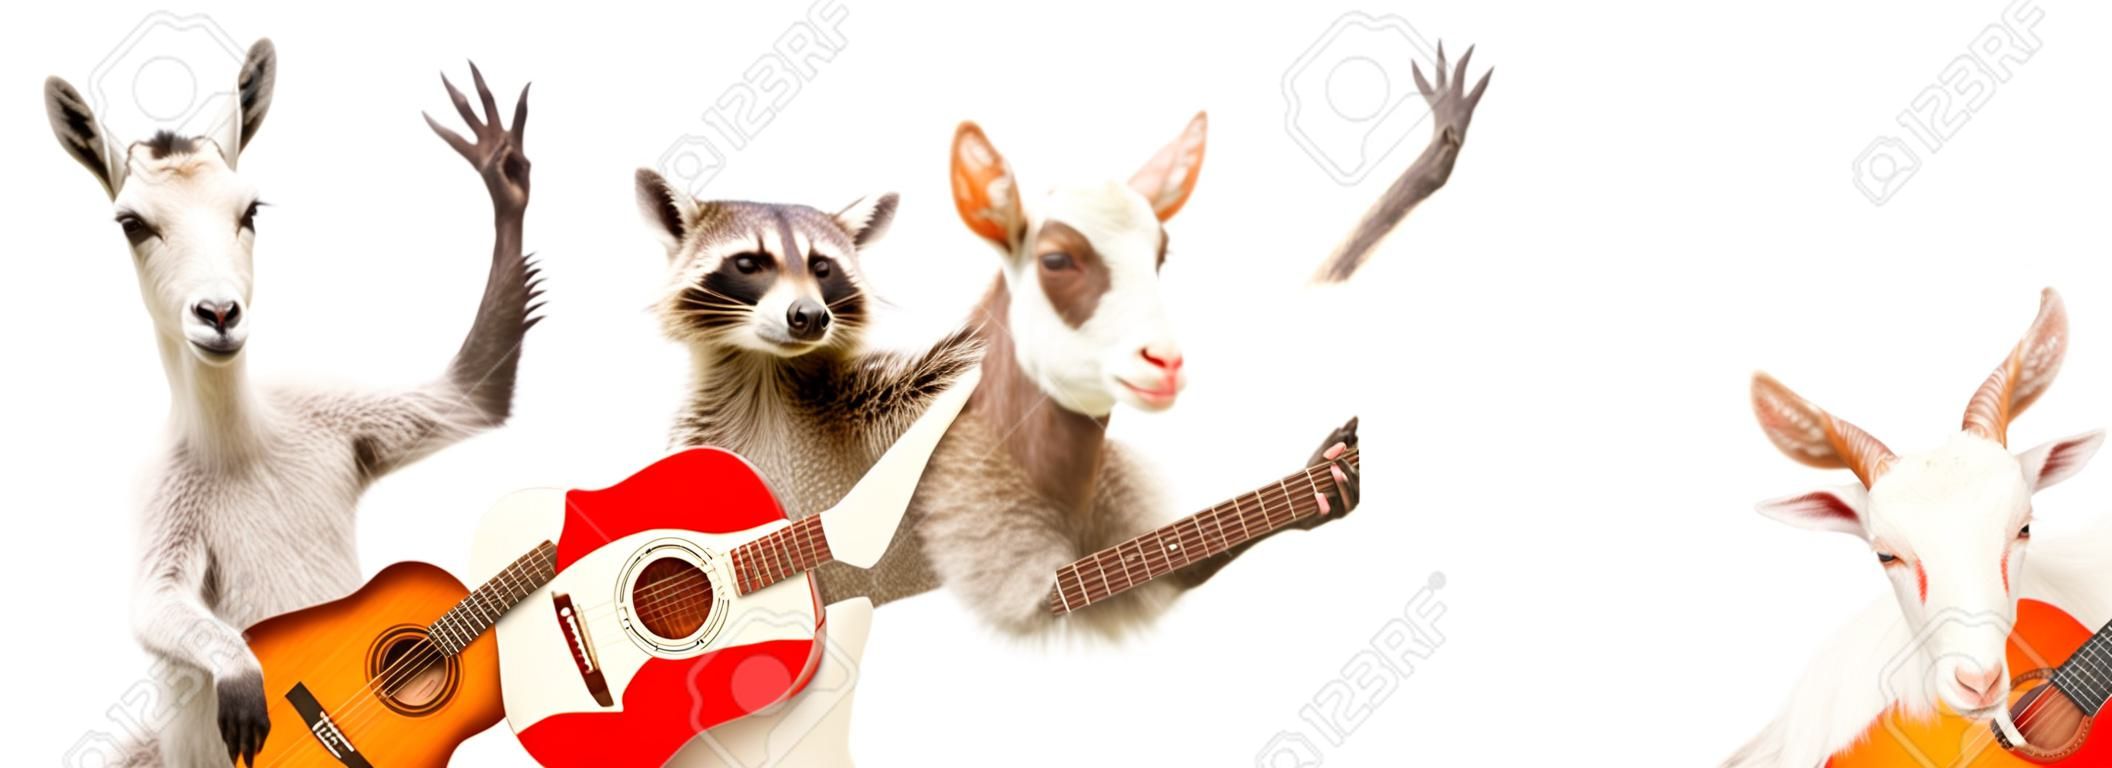 Lustiger Waschbär mit Akustikgitarre und Ziege mit E-Gitarre isoliert auf weißem Hintergrund